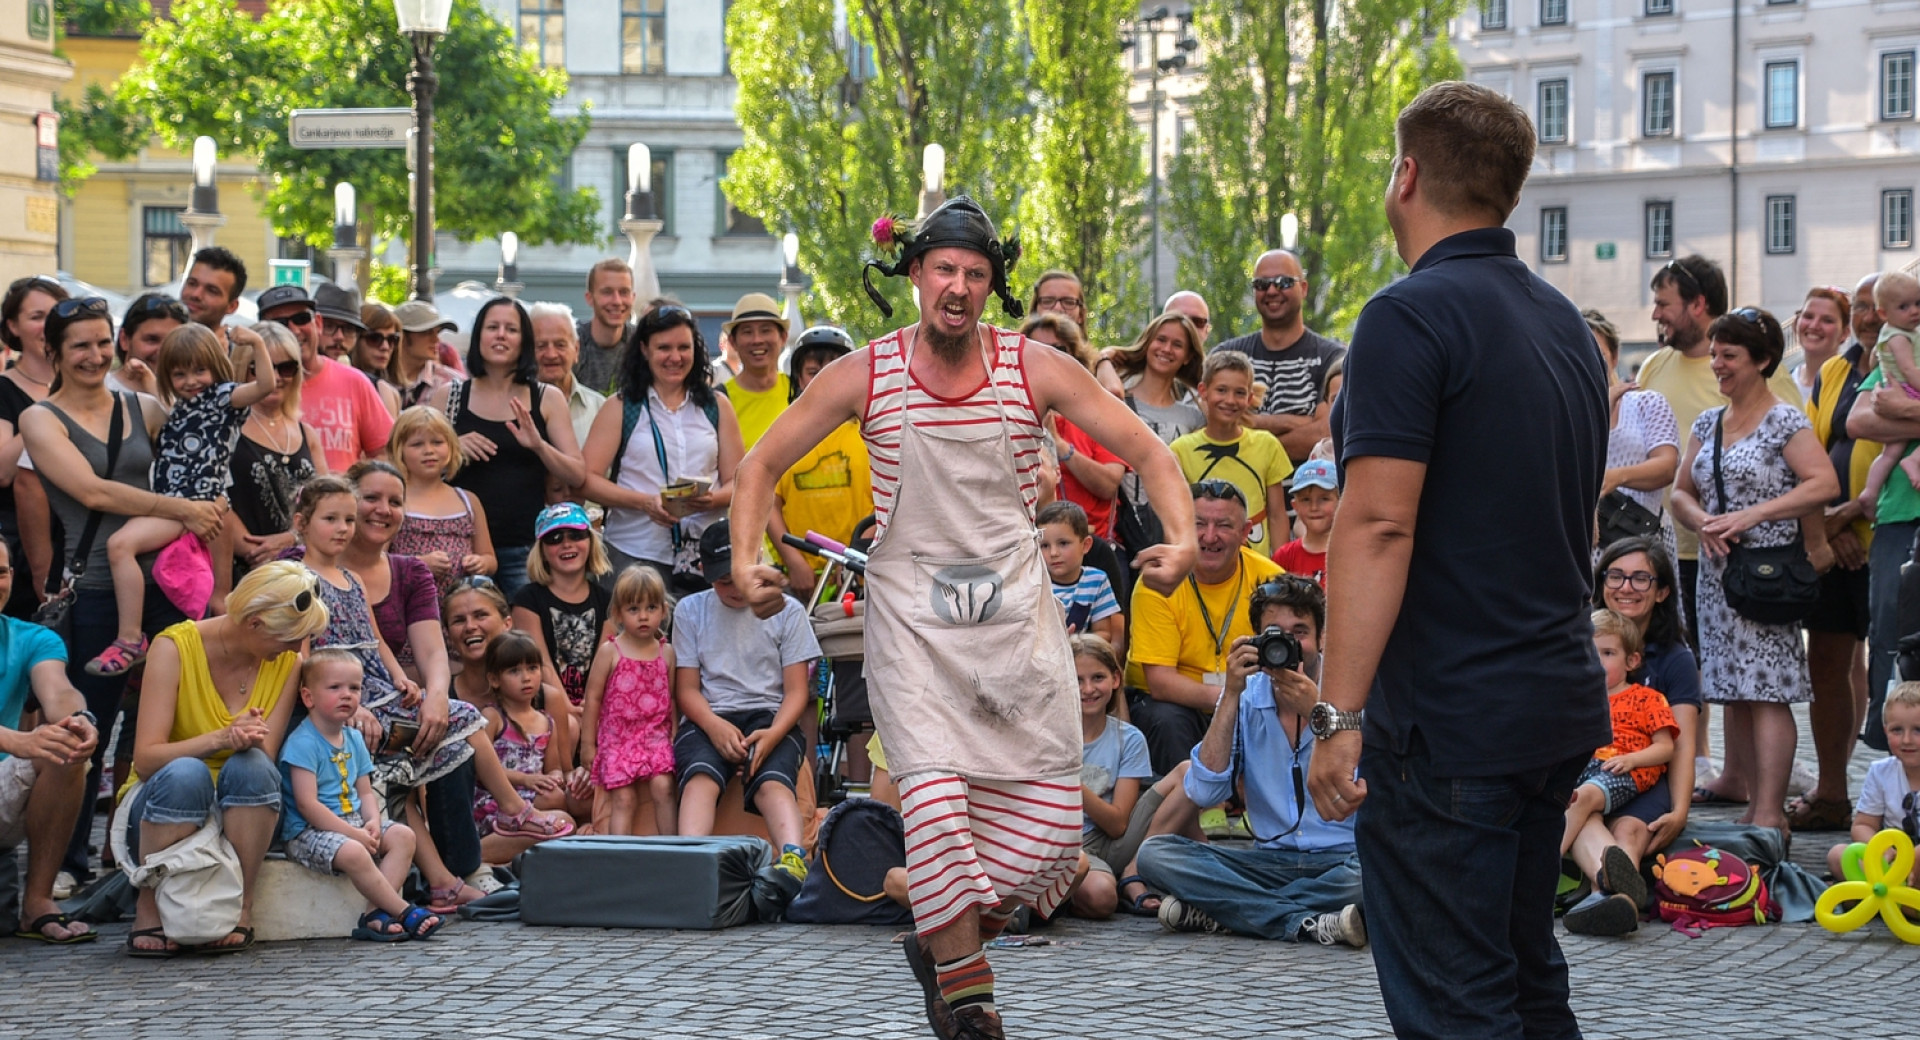 Nastopajoča na Ani Desetnici, festivalu uličnega gledališča v Ljubljani, okoli njiju občinstvo